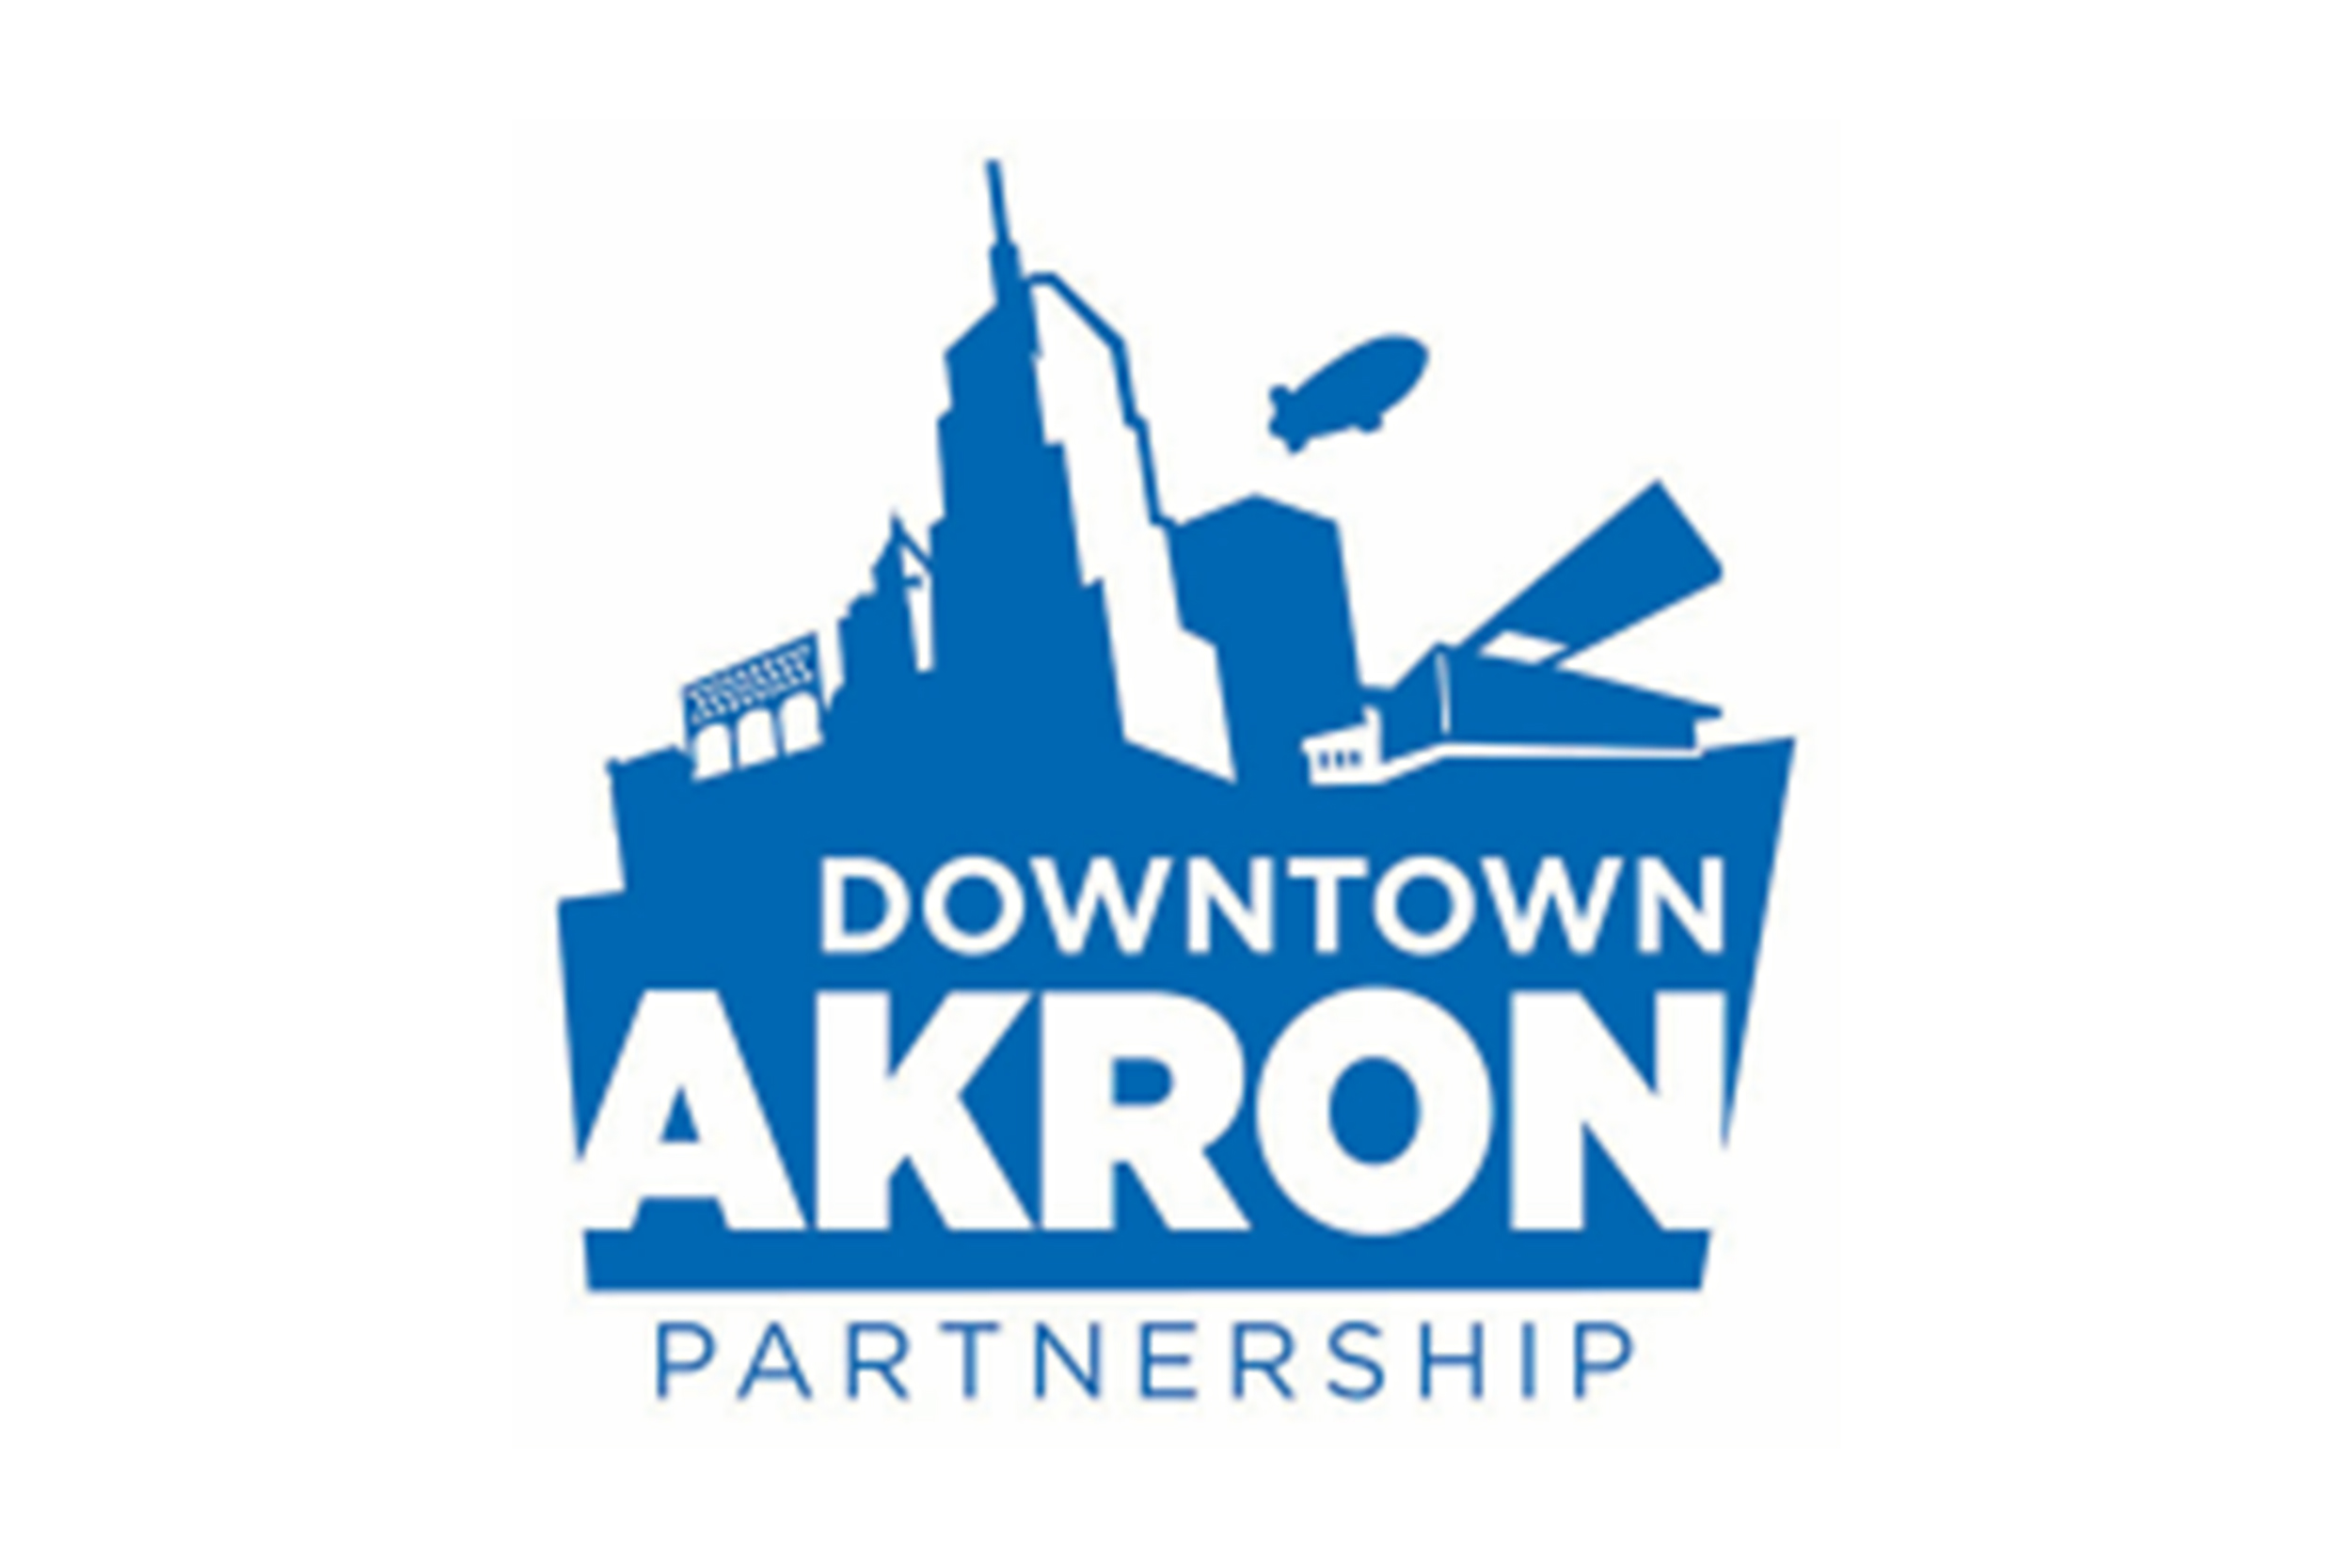 Downtown Akron Partnership